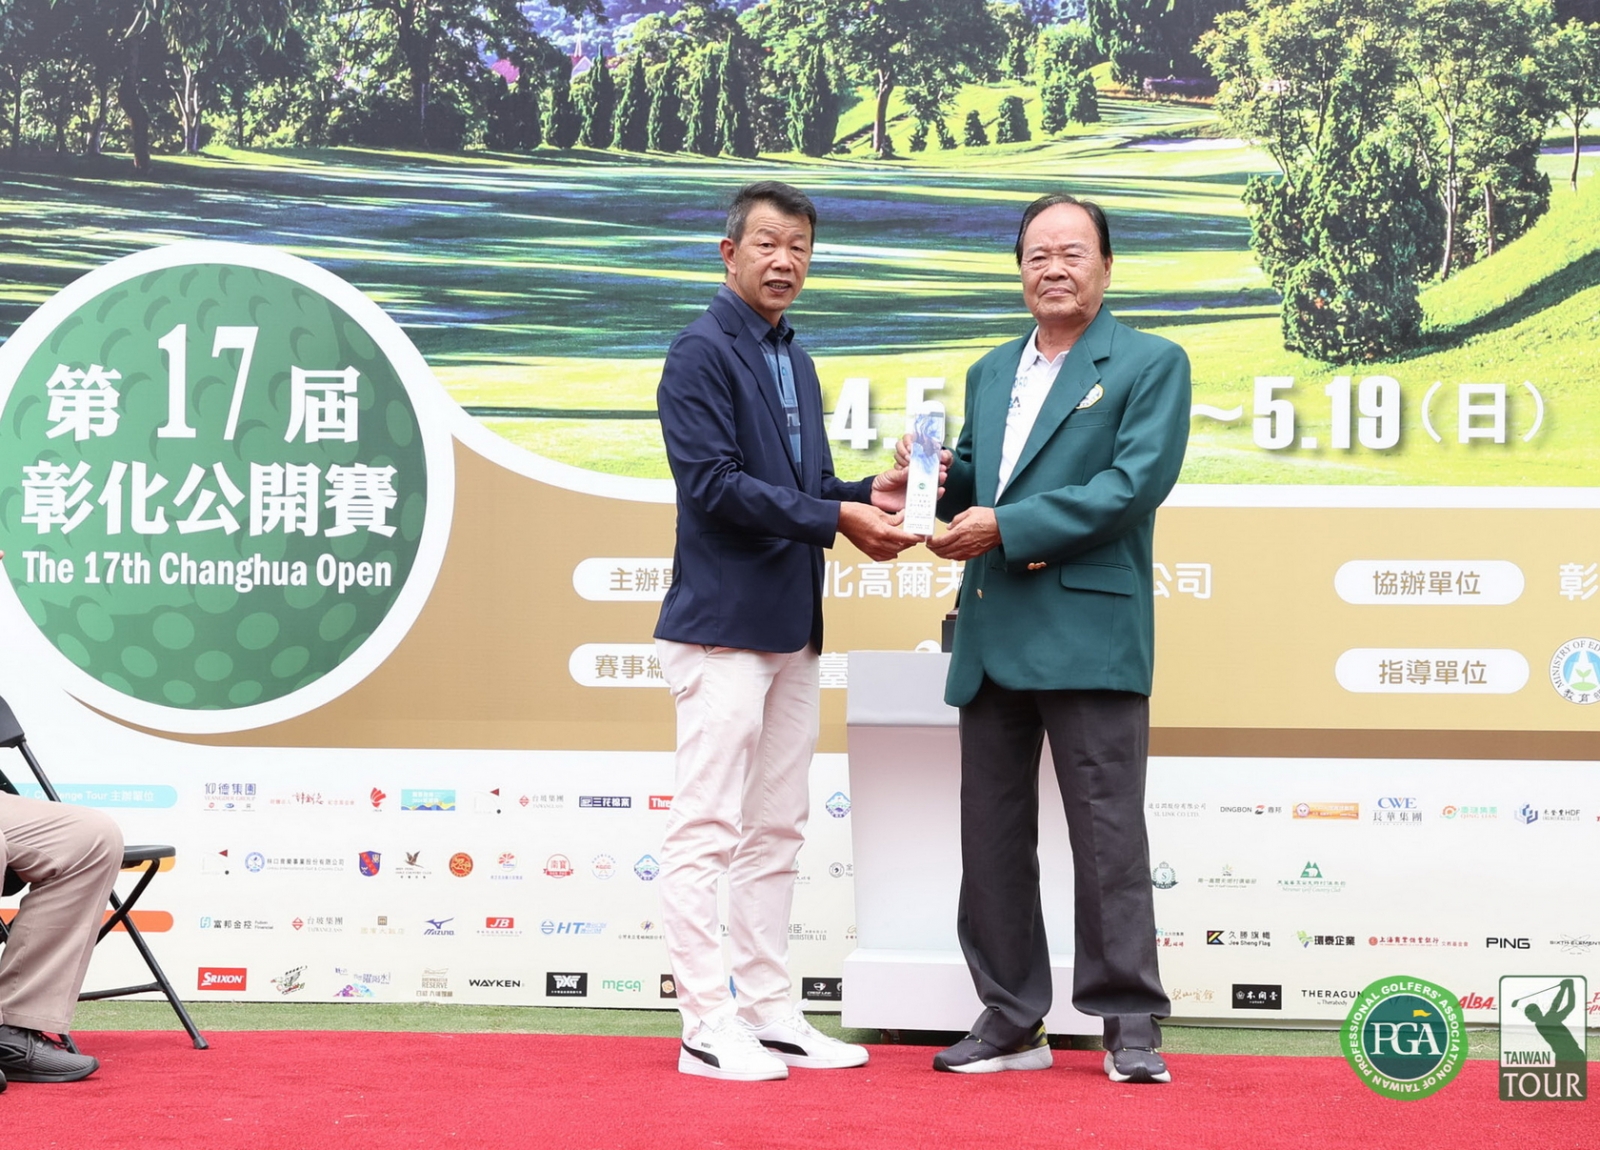 TPGA理事長陳榮興(左)頒感謝獎牌給彰化球場董事長林賜農。(鍾豐榮攝影)